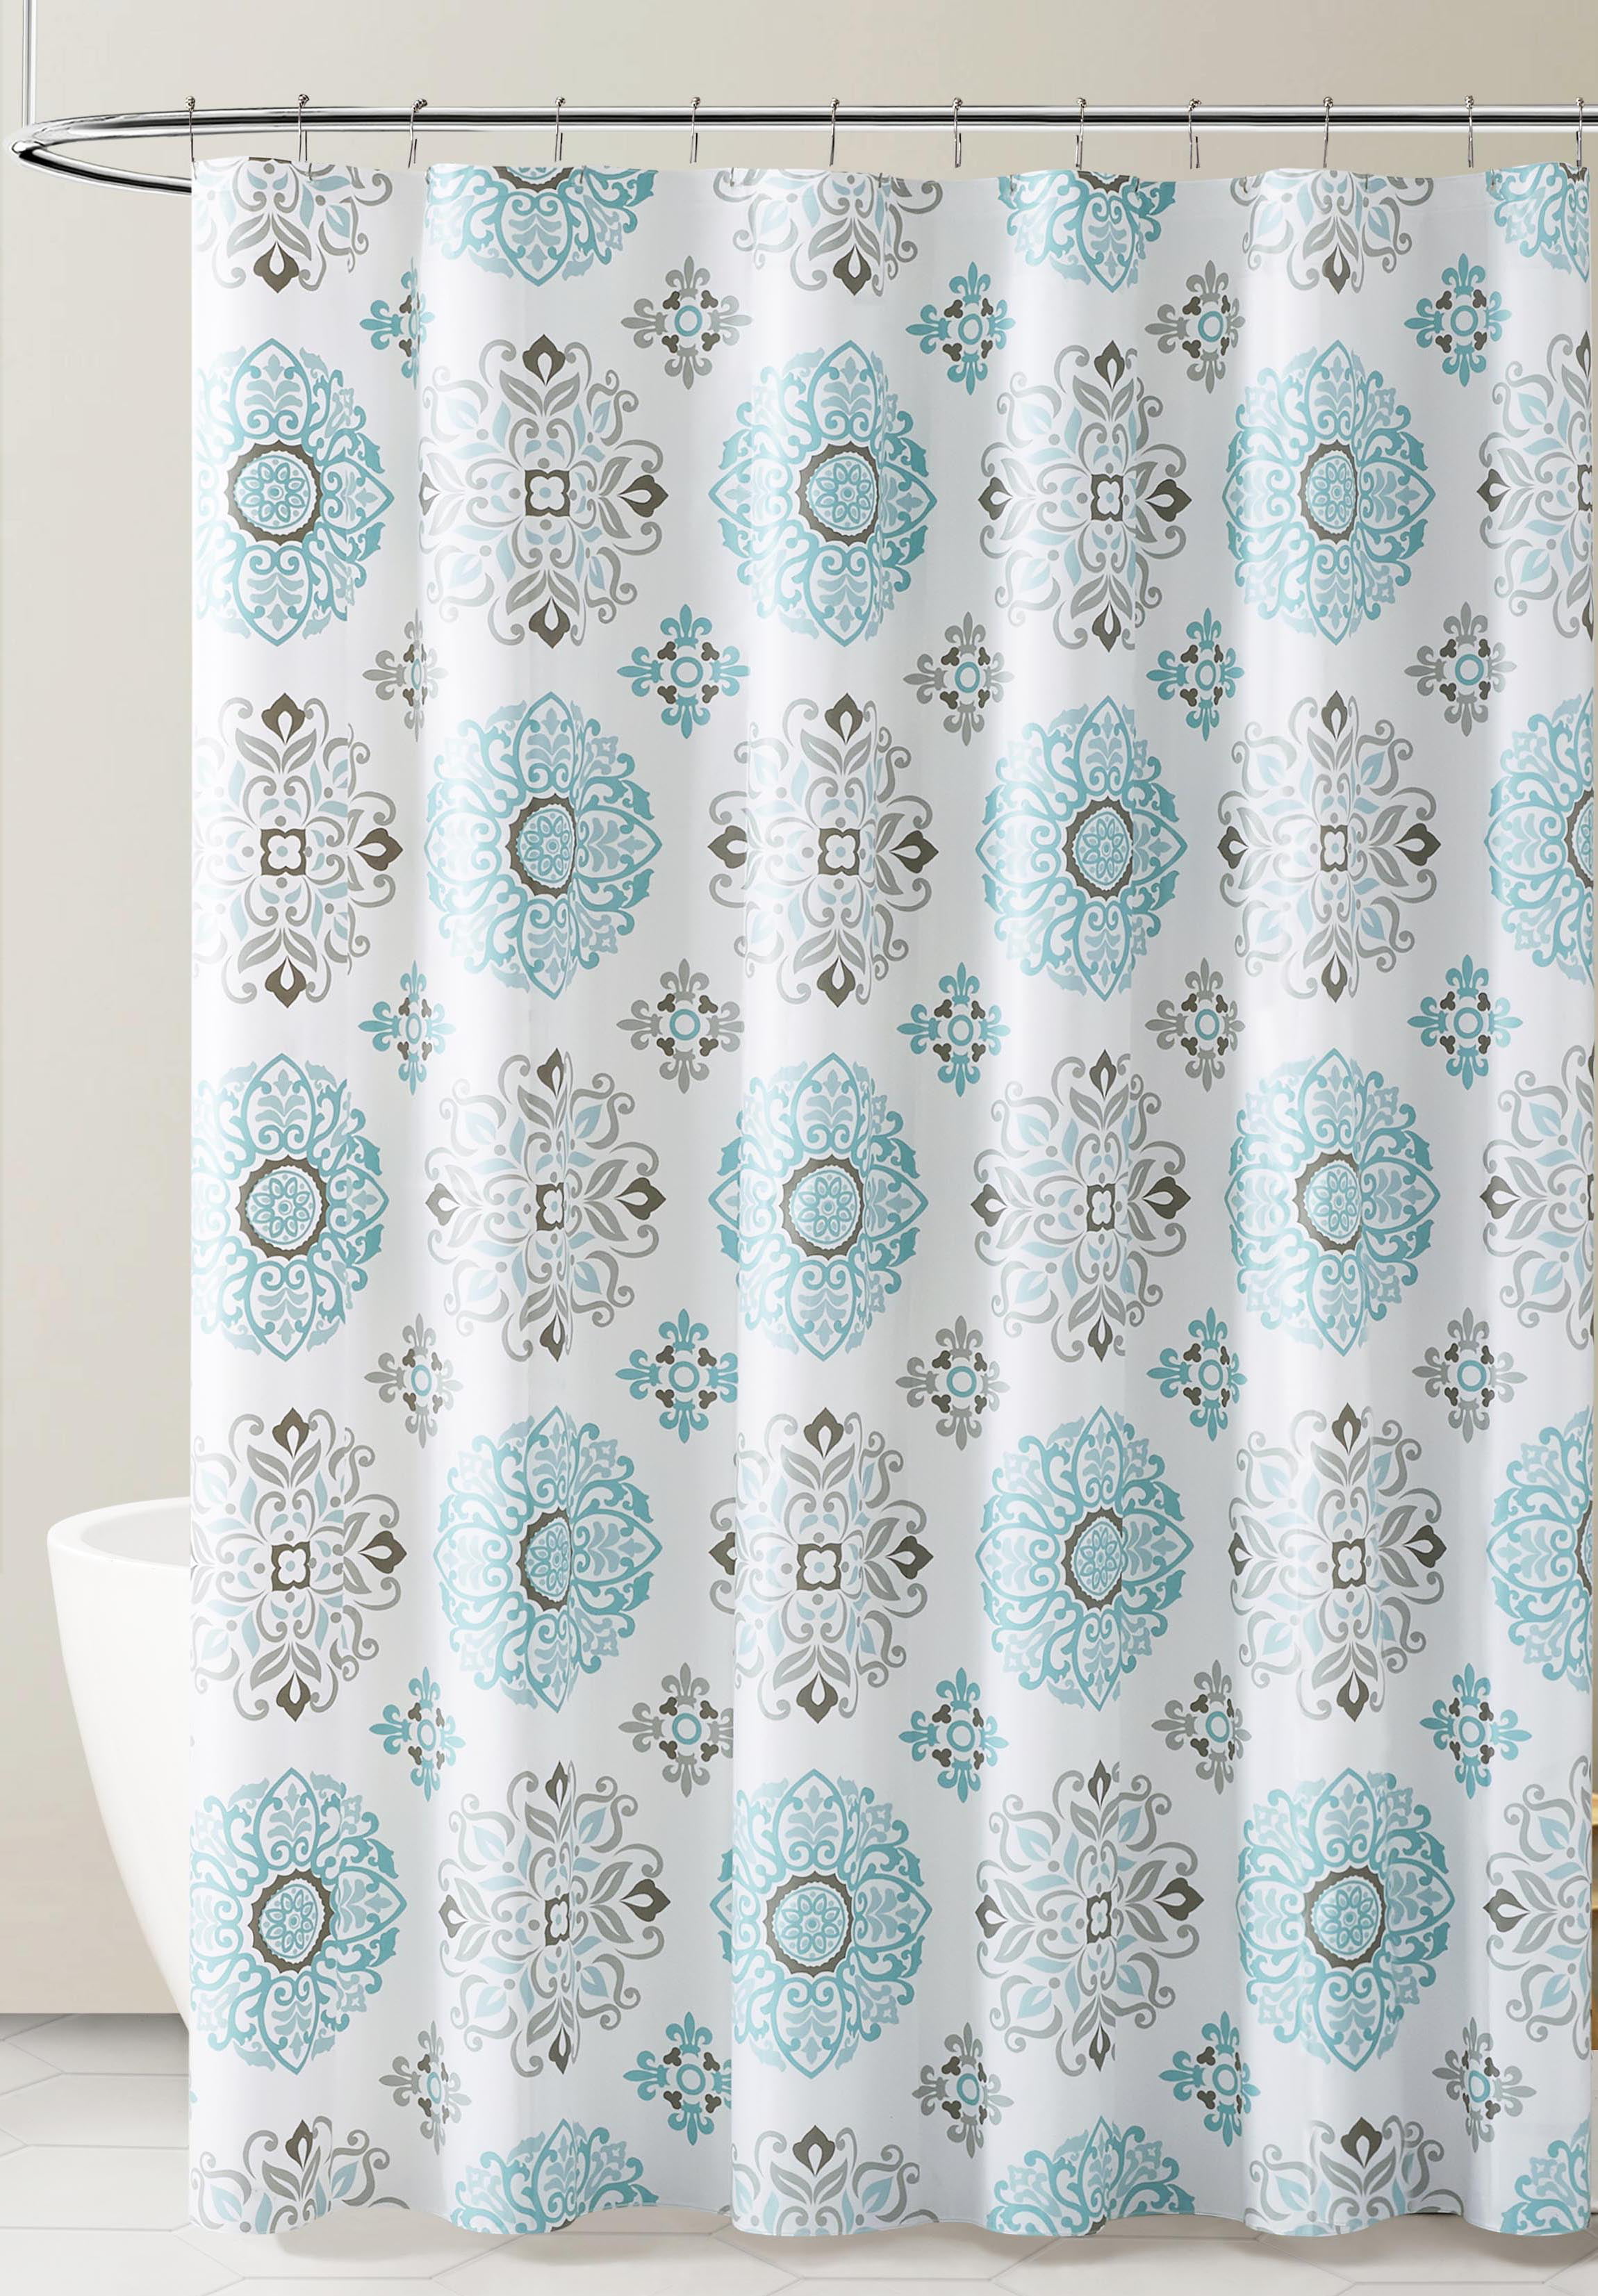 Peva Shower Curtain Liner Odorless Pvc, Full Size Shower Curtain